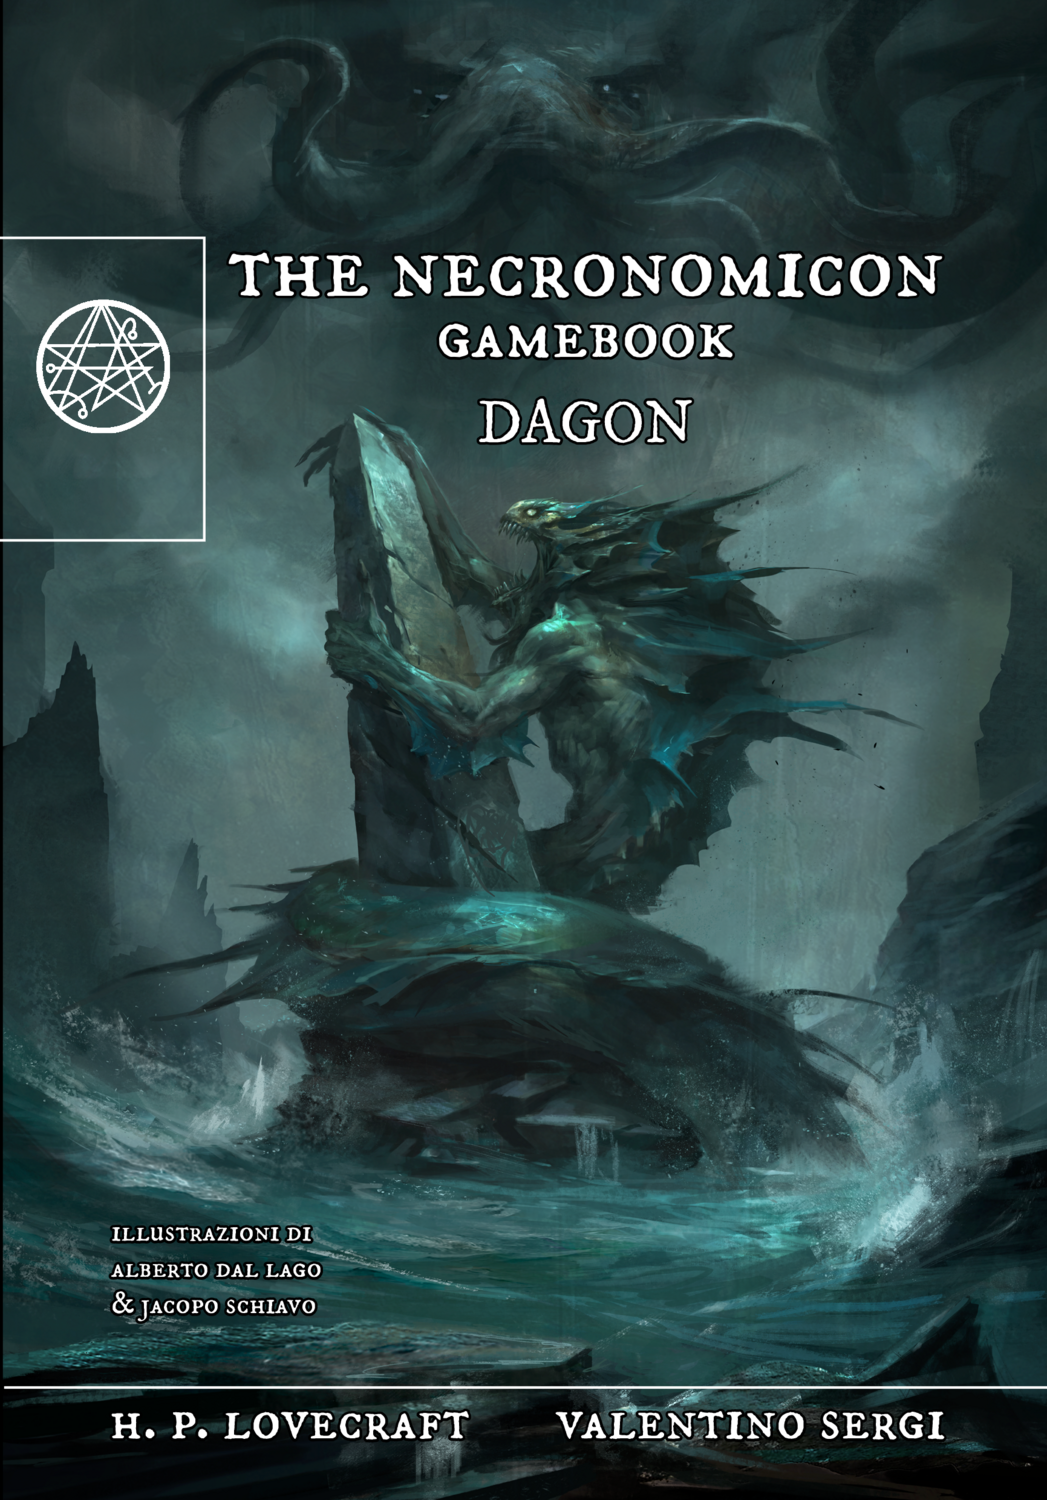 THE NECRONOMICON GAMEBOOK - DAGON